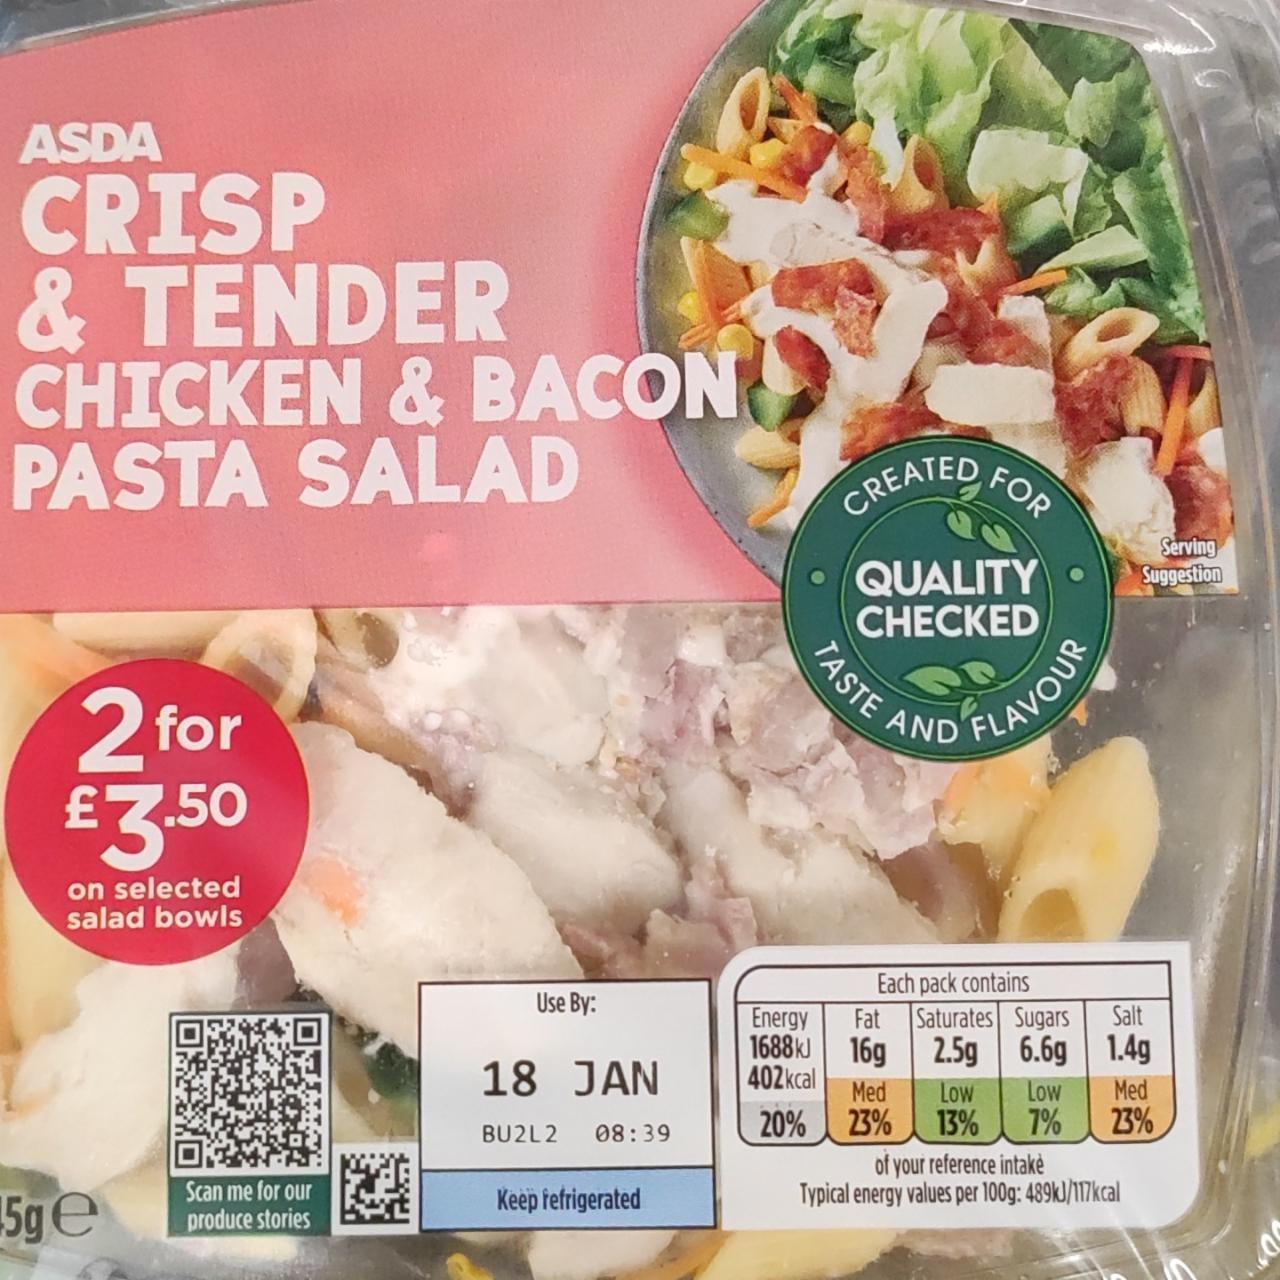 Képek - Crisp & tender chicken & bacon pasta salad ASDA